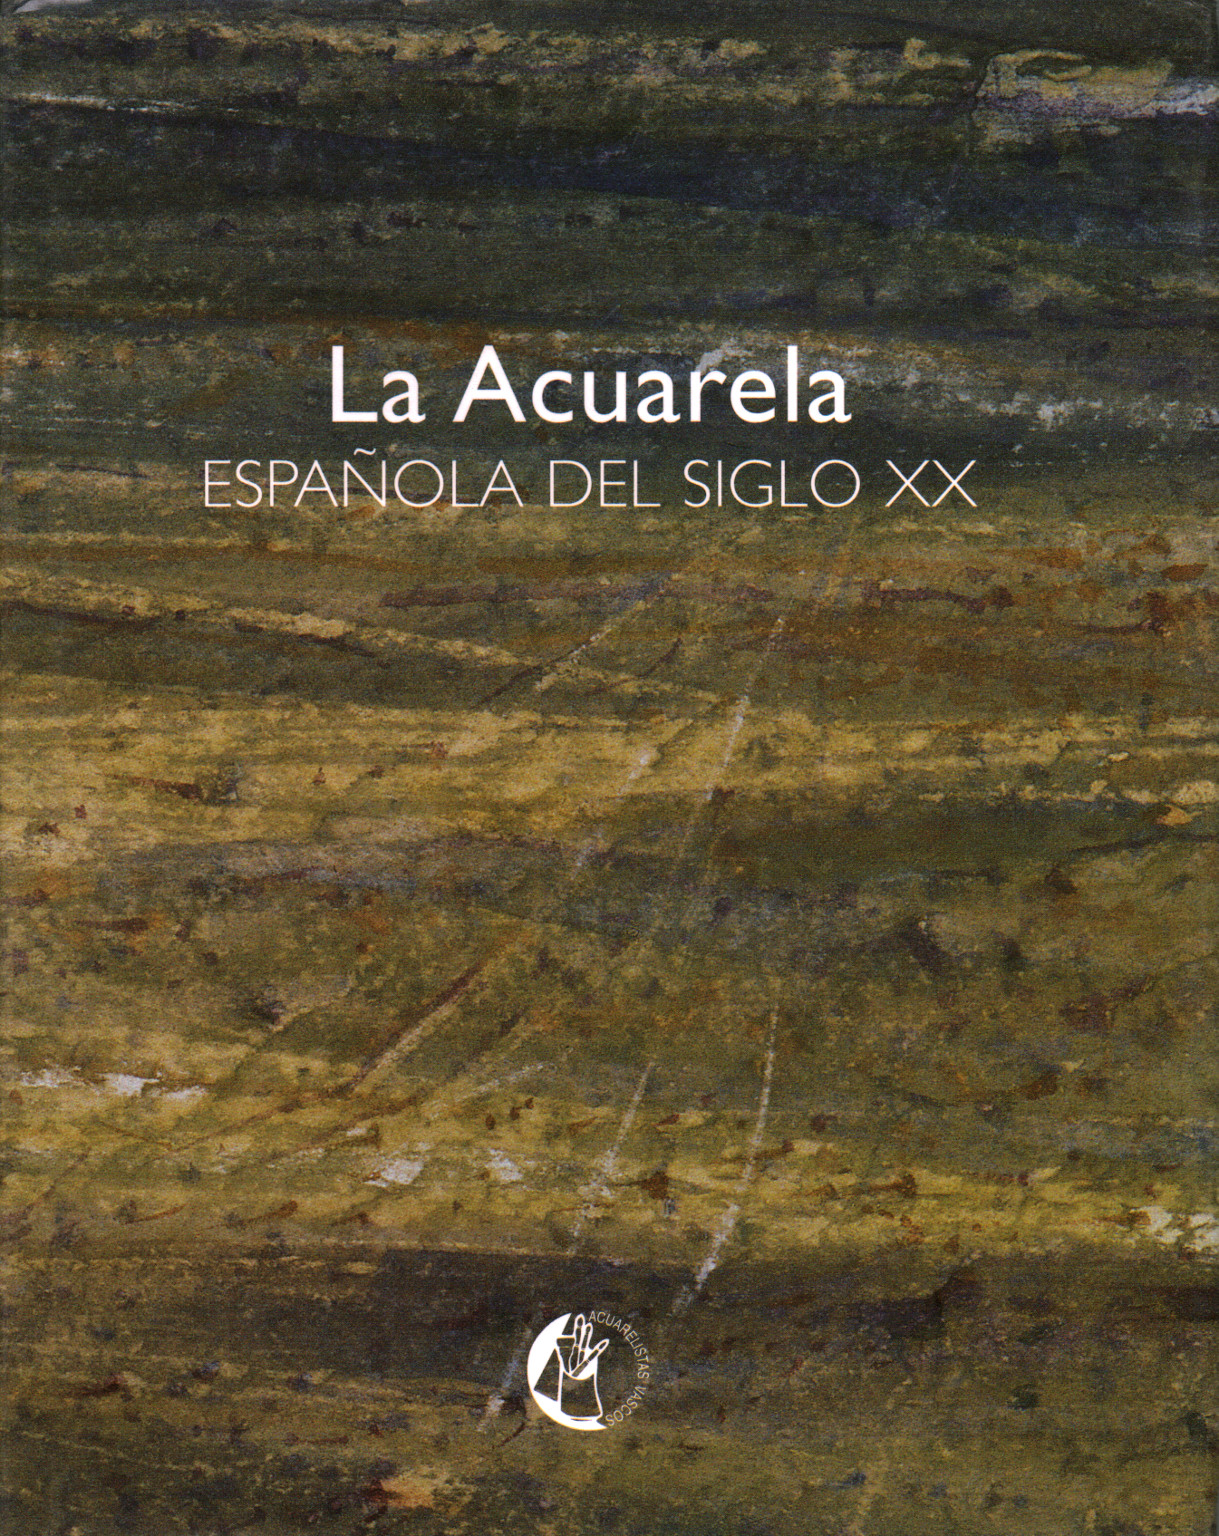 The Acuarela espanola del siglo XX, s.a.